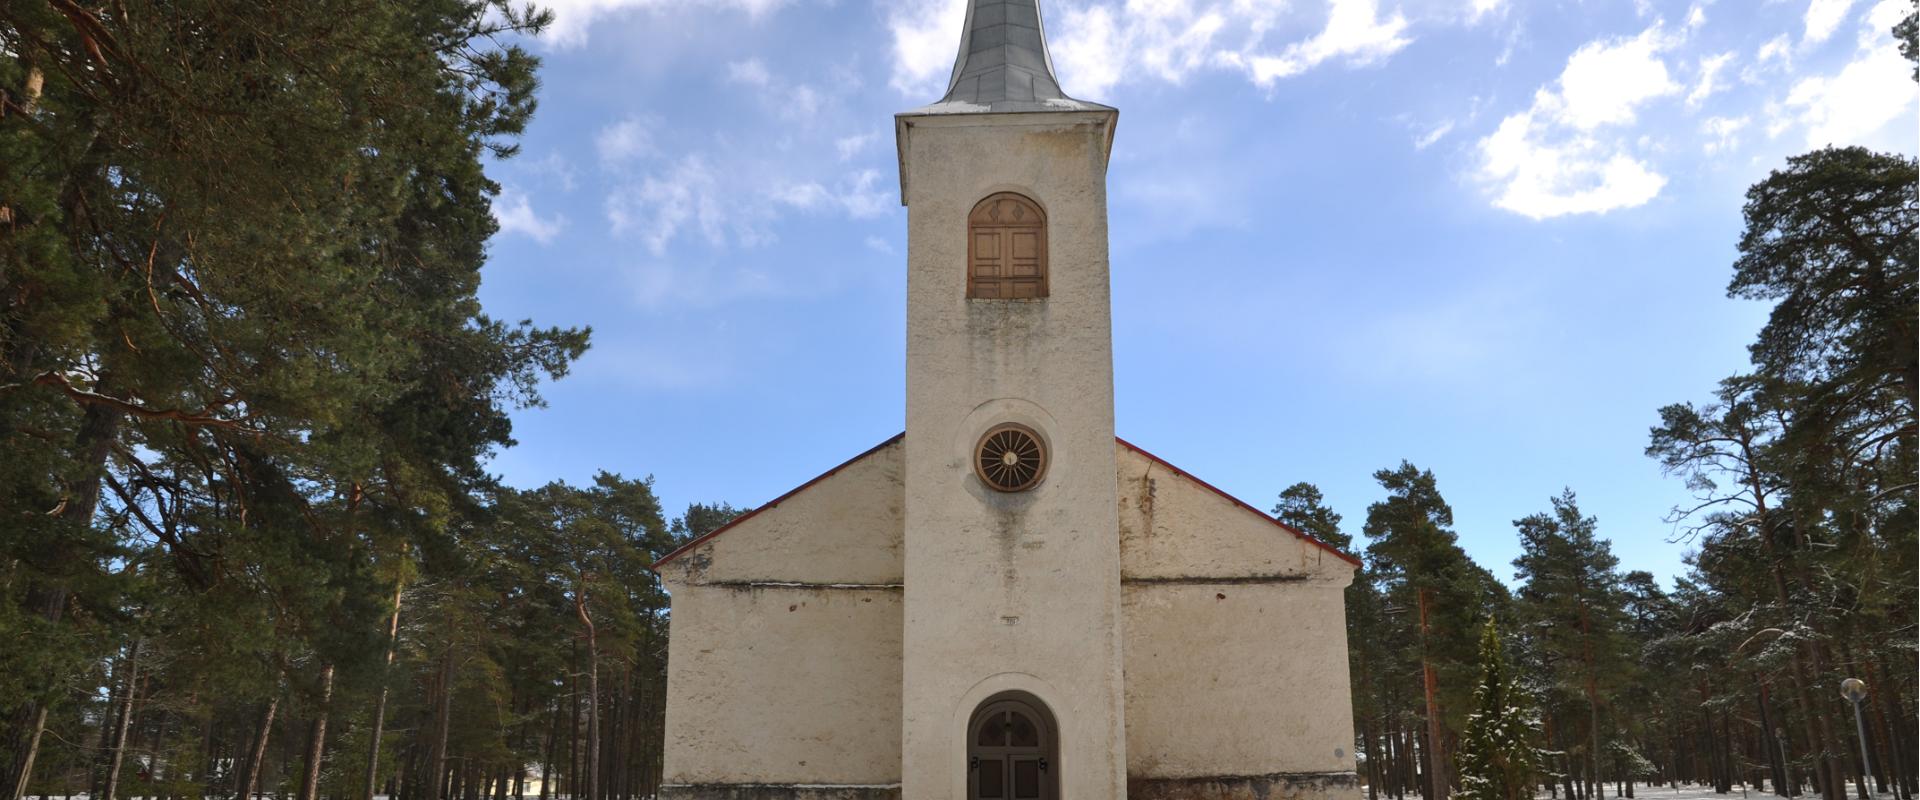 Emmaste Kirche